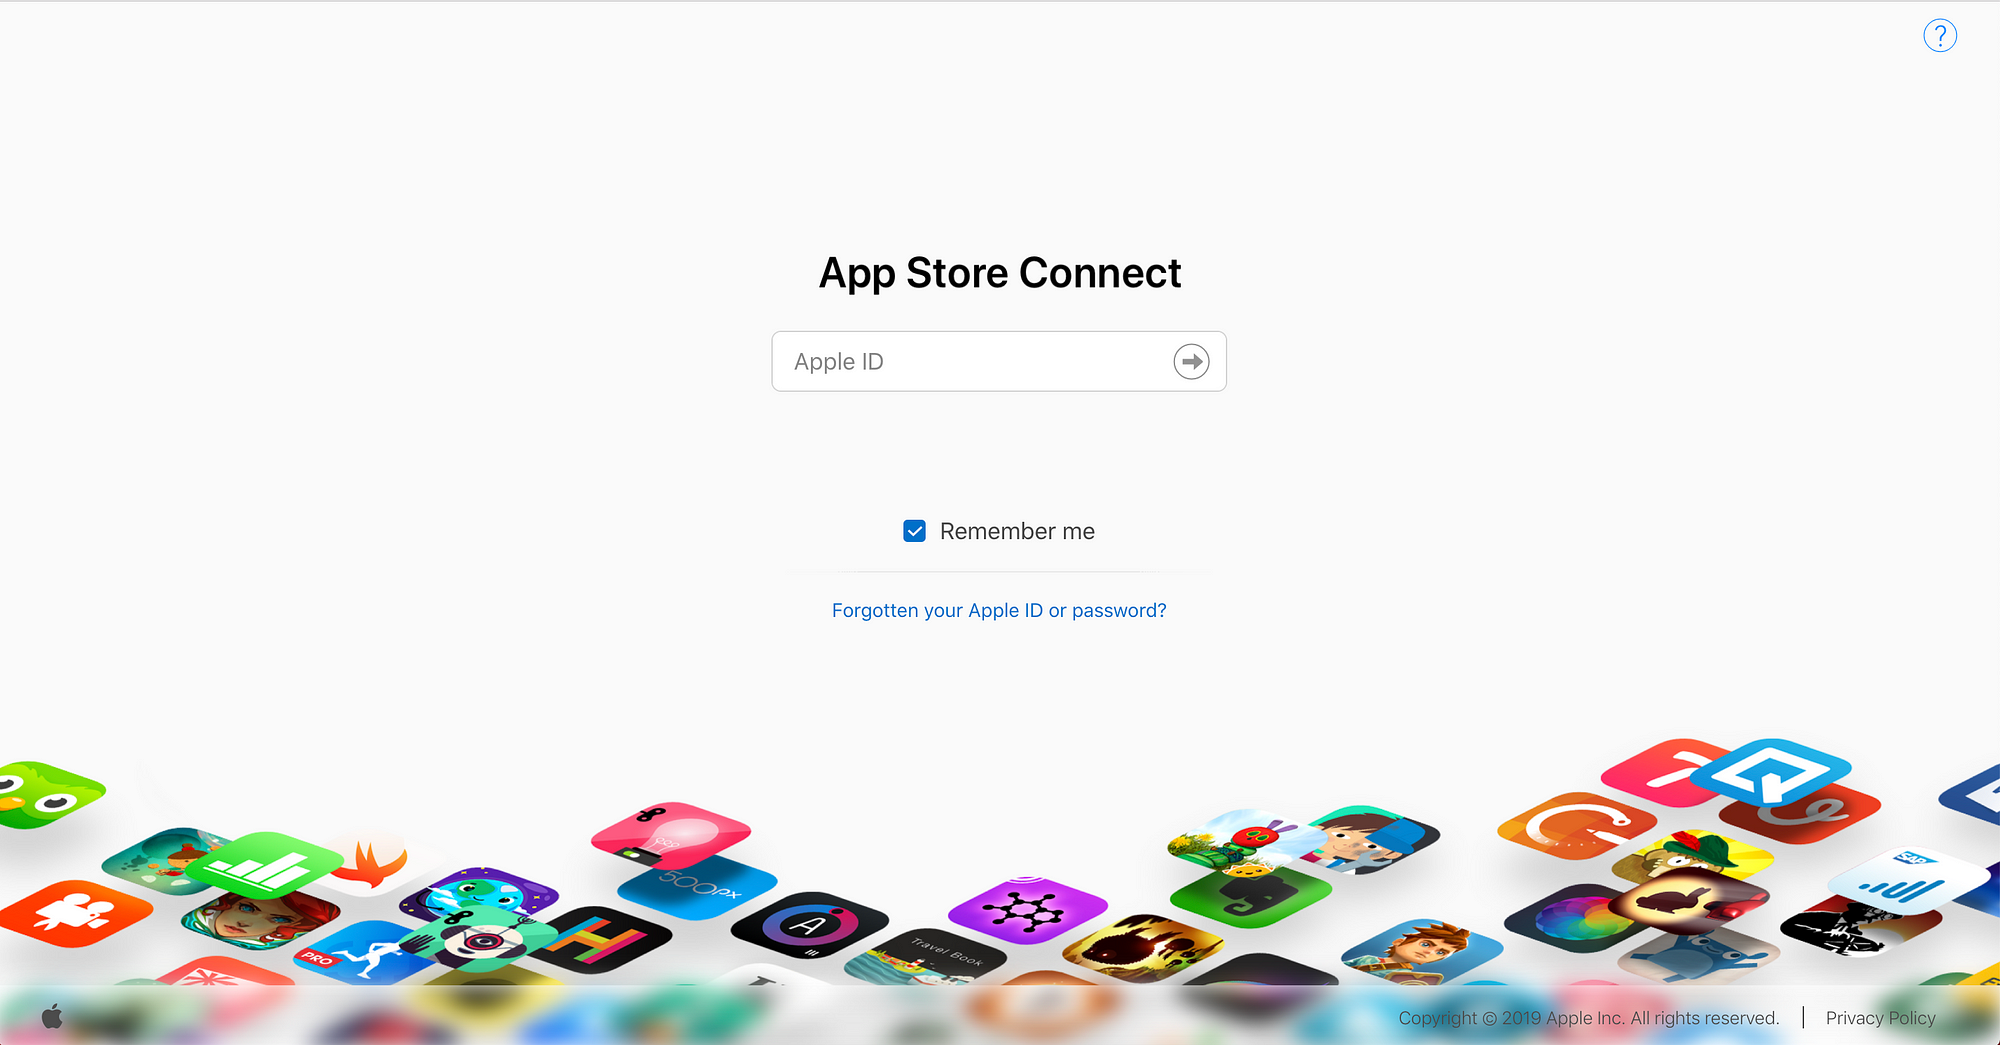 IOS 15 Icons Apple Inc: Apple Store, Apple ID, Swift UI